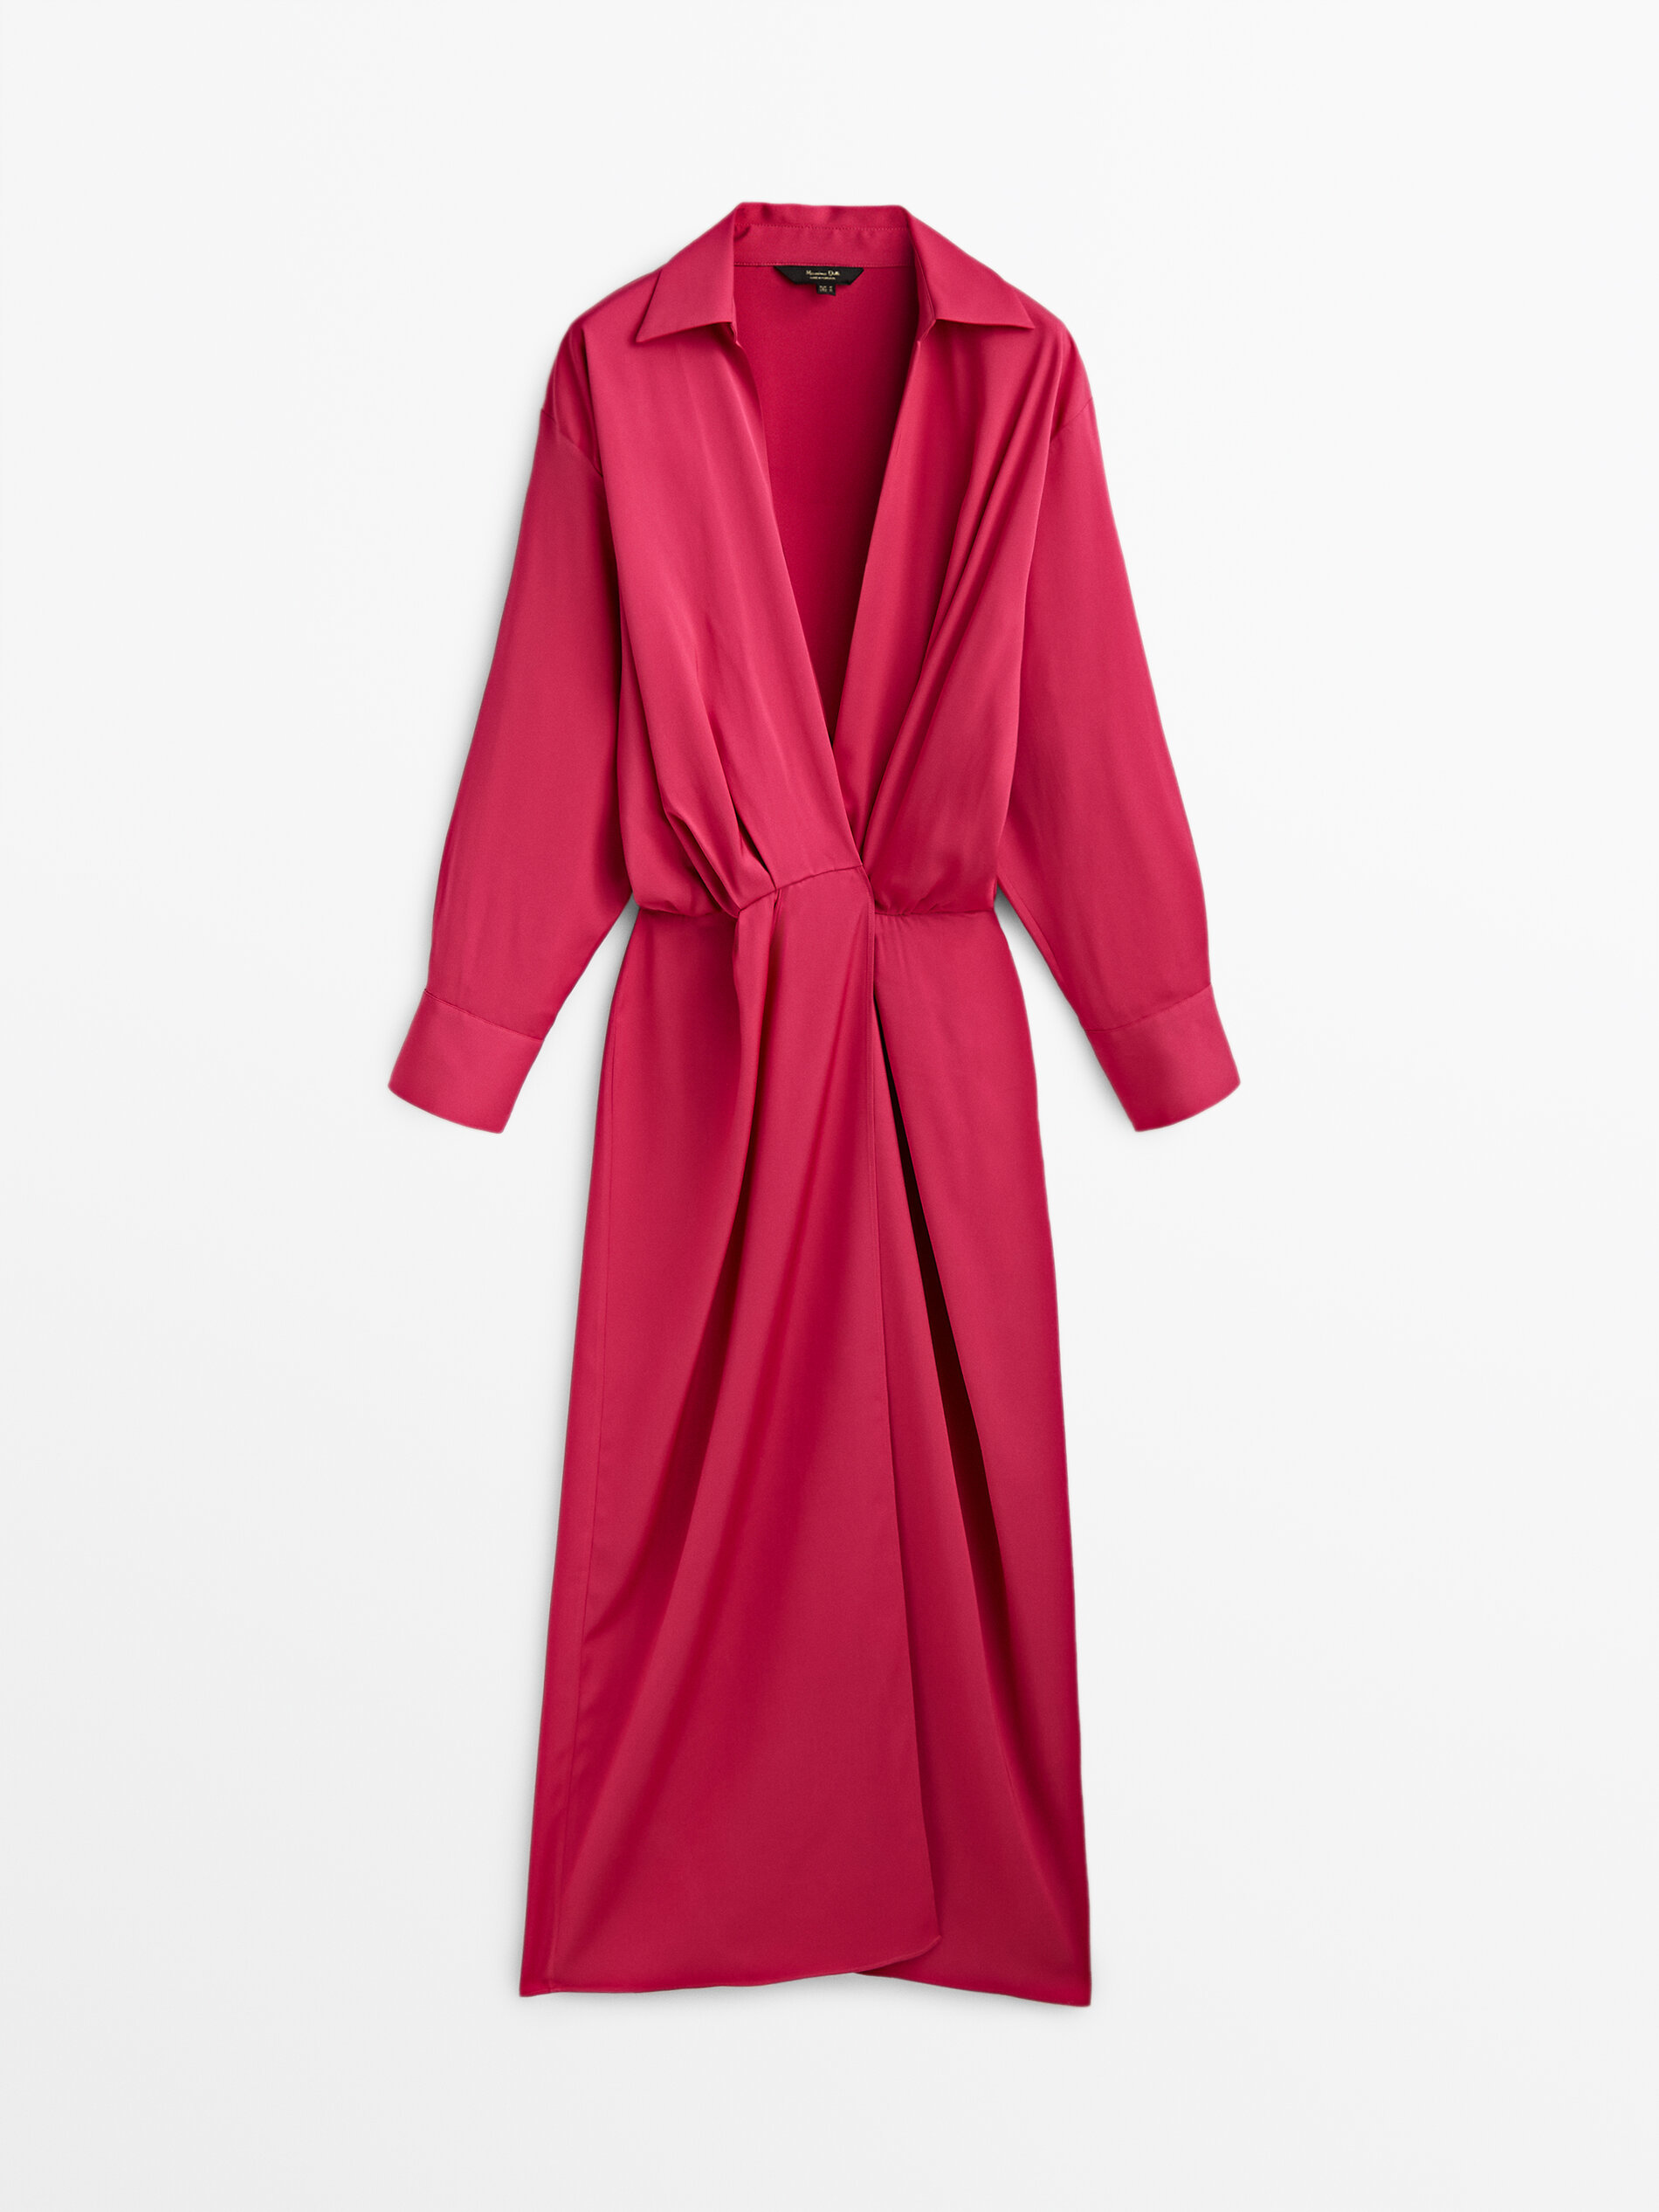 Vestido largo color fucsia, de Massimo Dutti (59,95 euros).